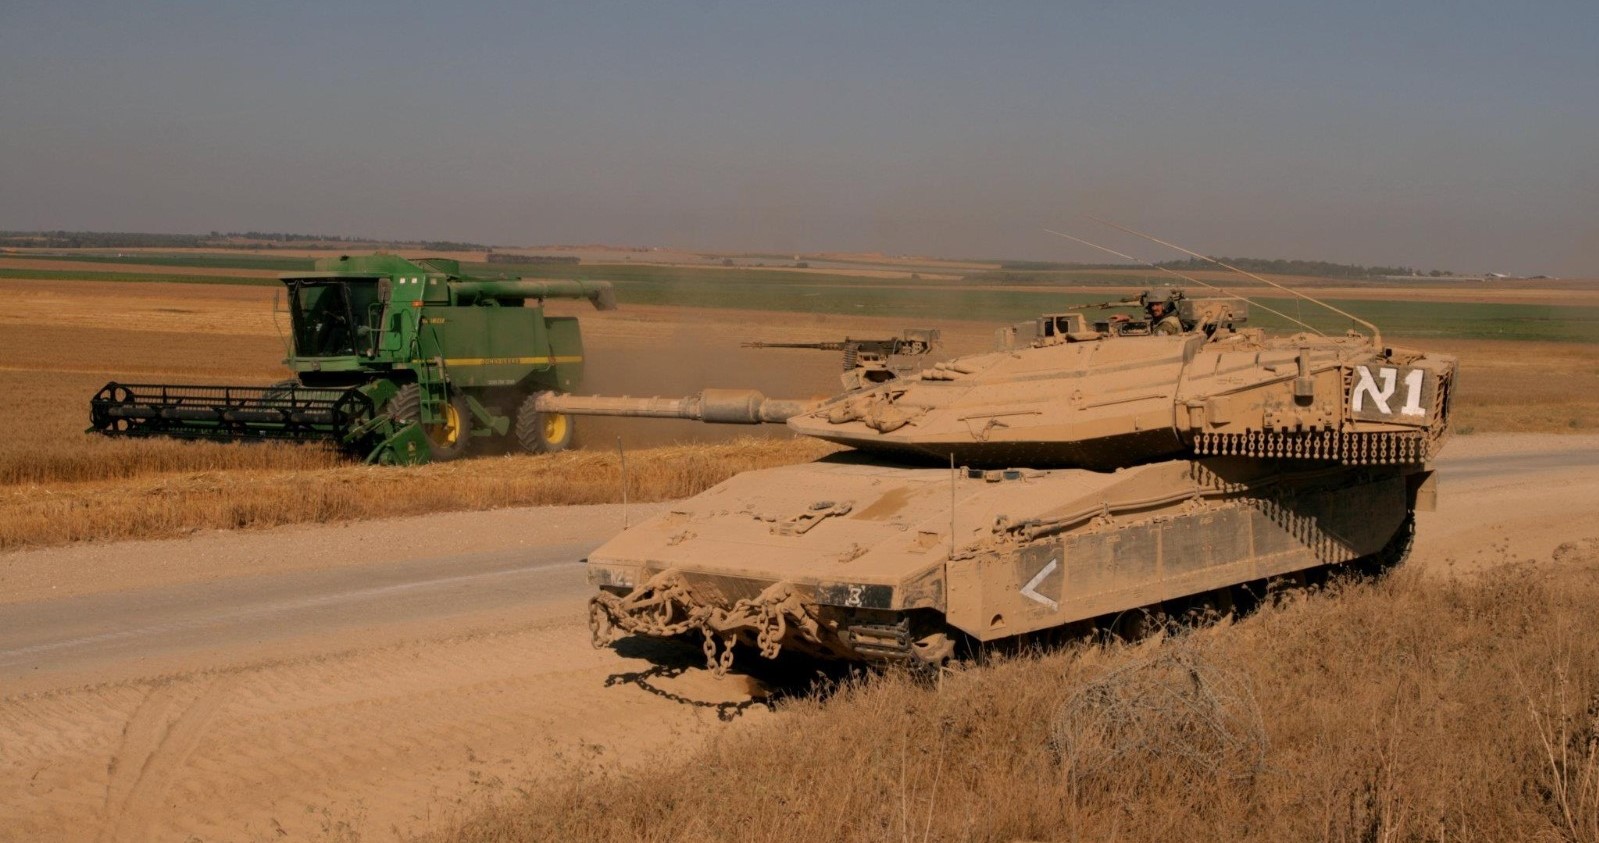 טנק שומר על קומביין שקוצר בשדות עוטף עזה במהלך מבצע צוק איתן. צילום: רפי בביאן